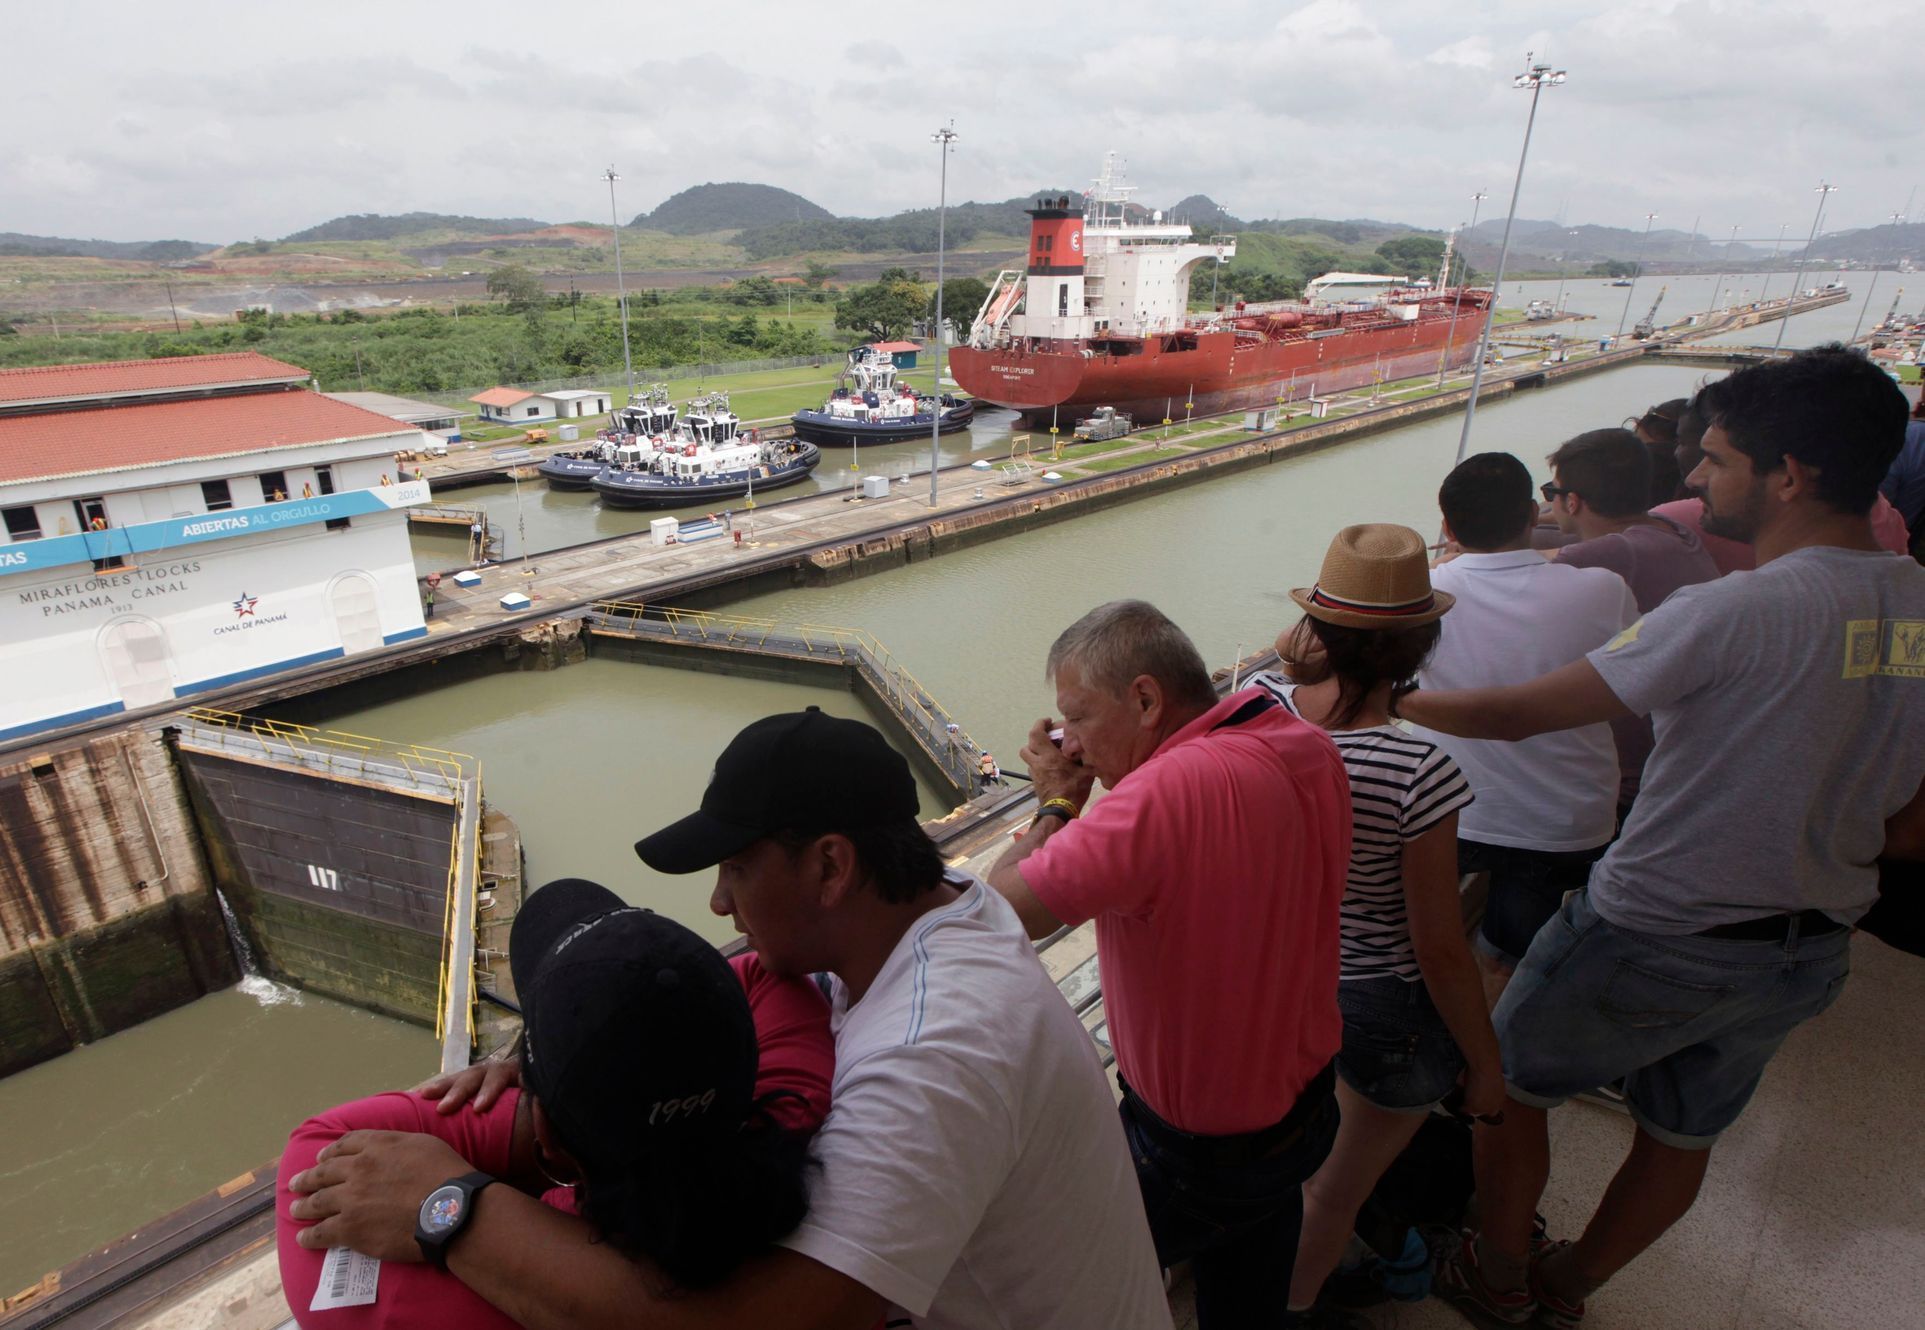 100 let otevření Panamského průplavu